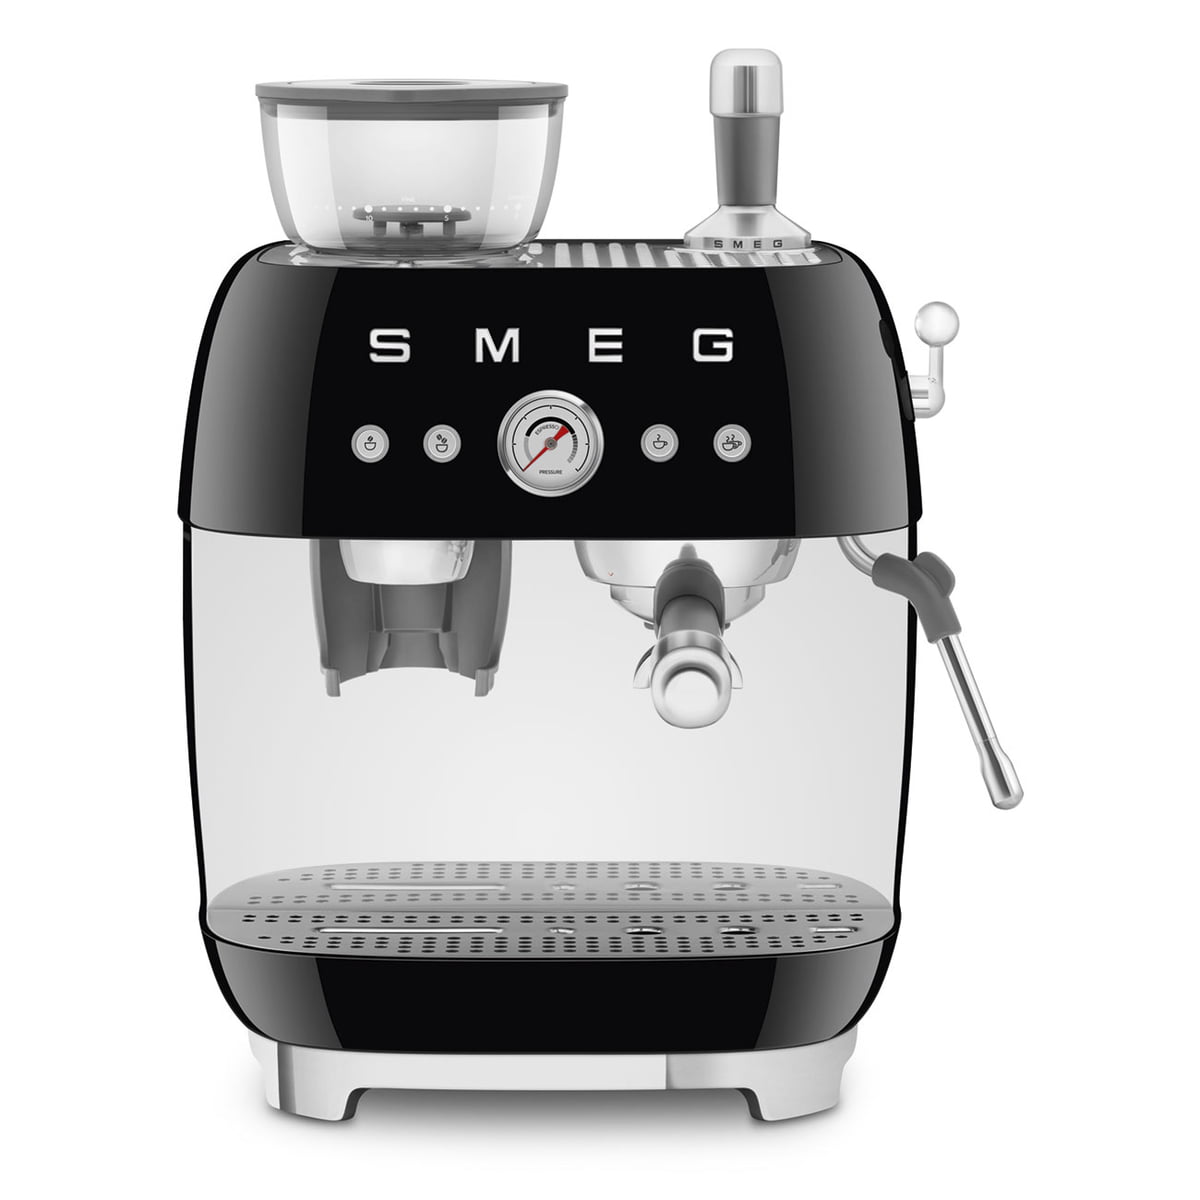 Smeg - Espresso machine with portafilter EGF03